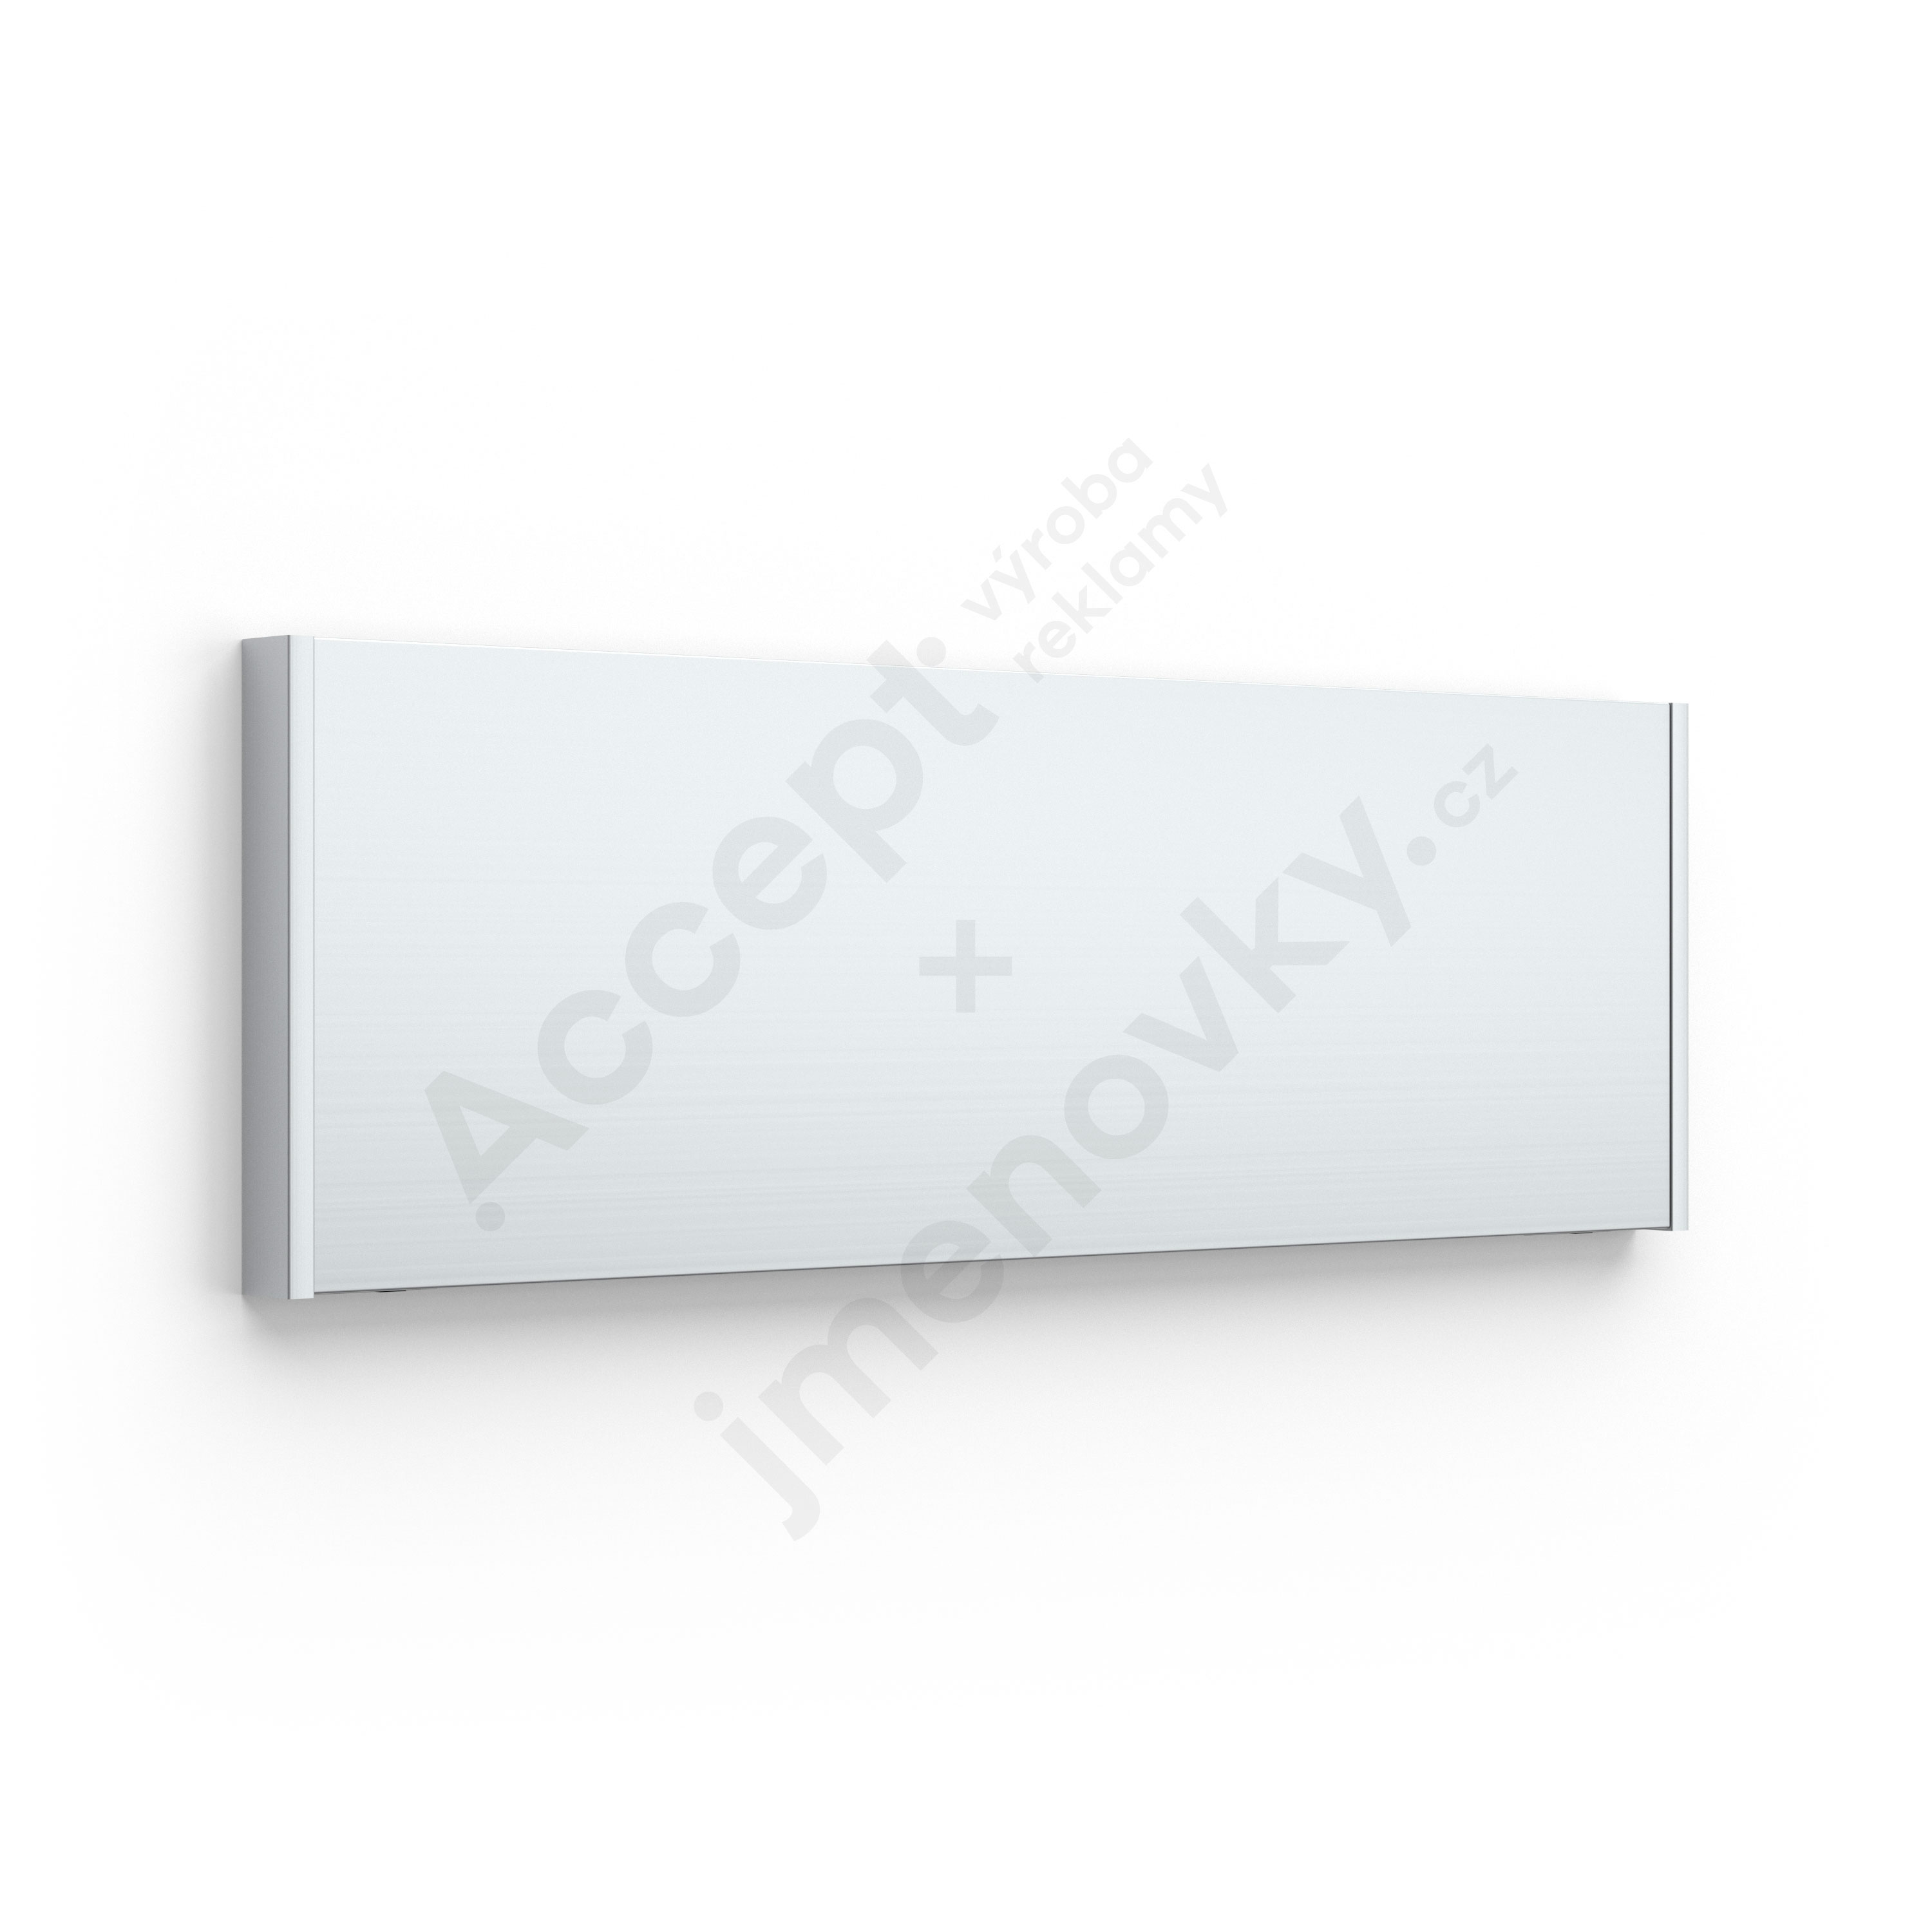 Dveřní tabulka SlimSlatz (nezásuvný systém, rovné bočnice, 187 x 62 mm)